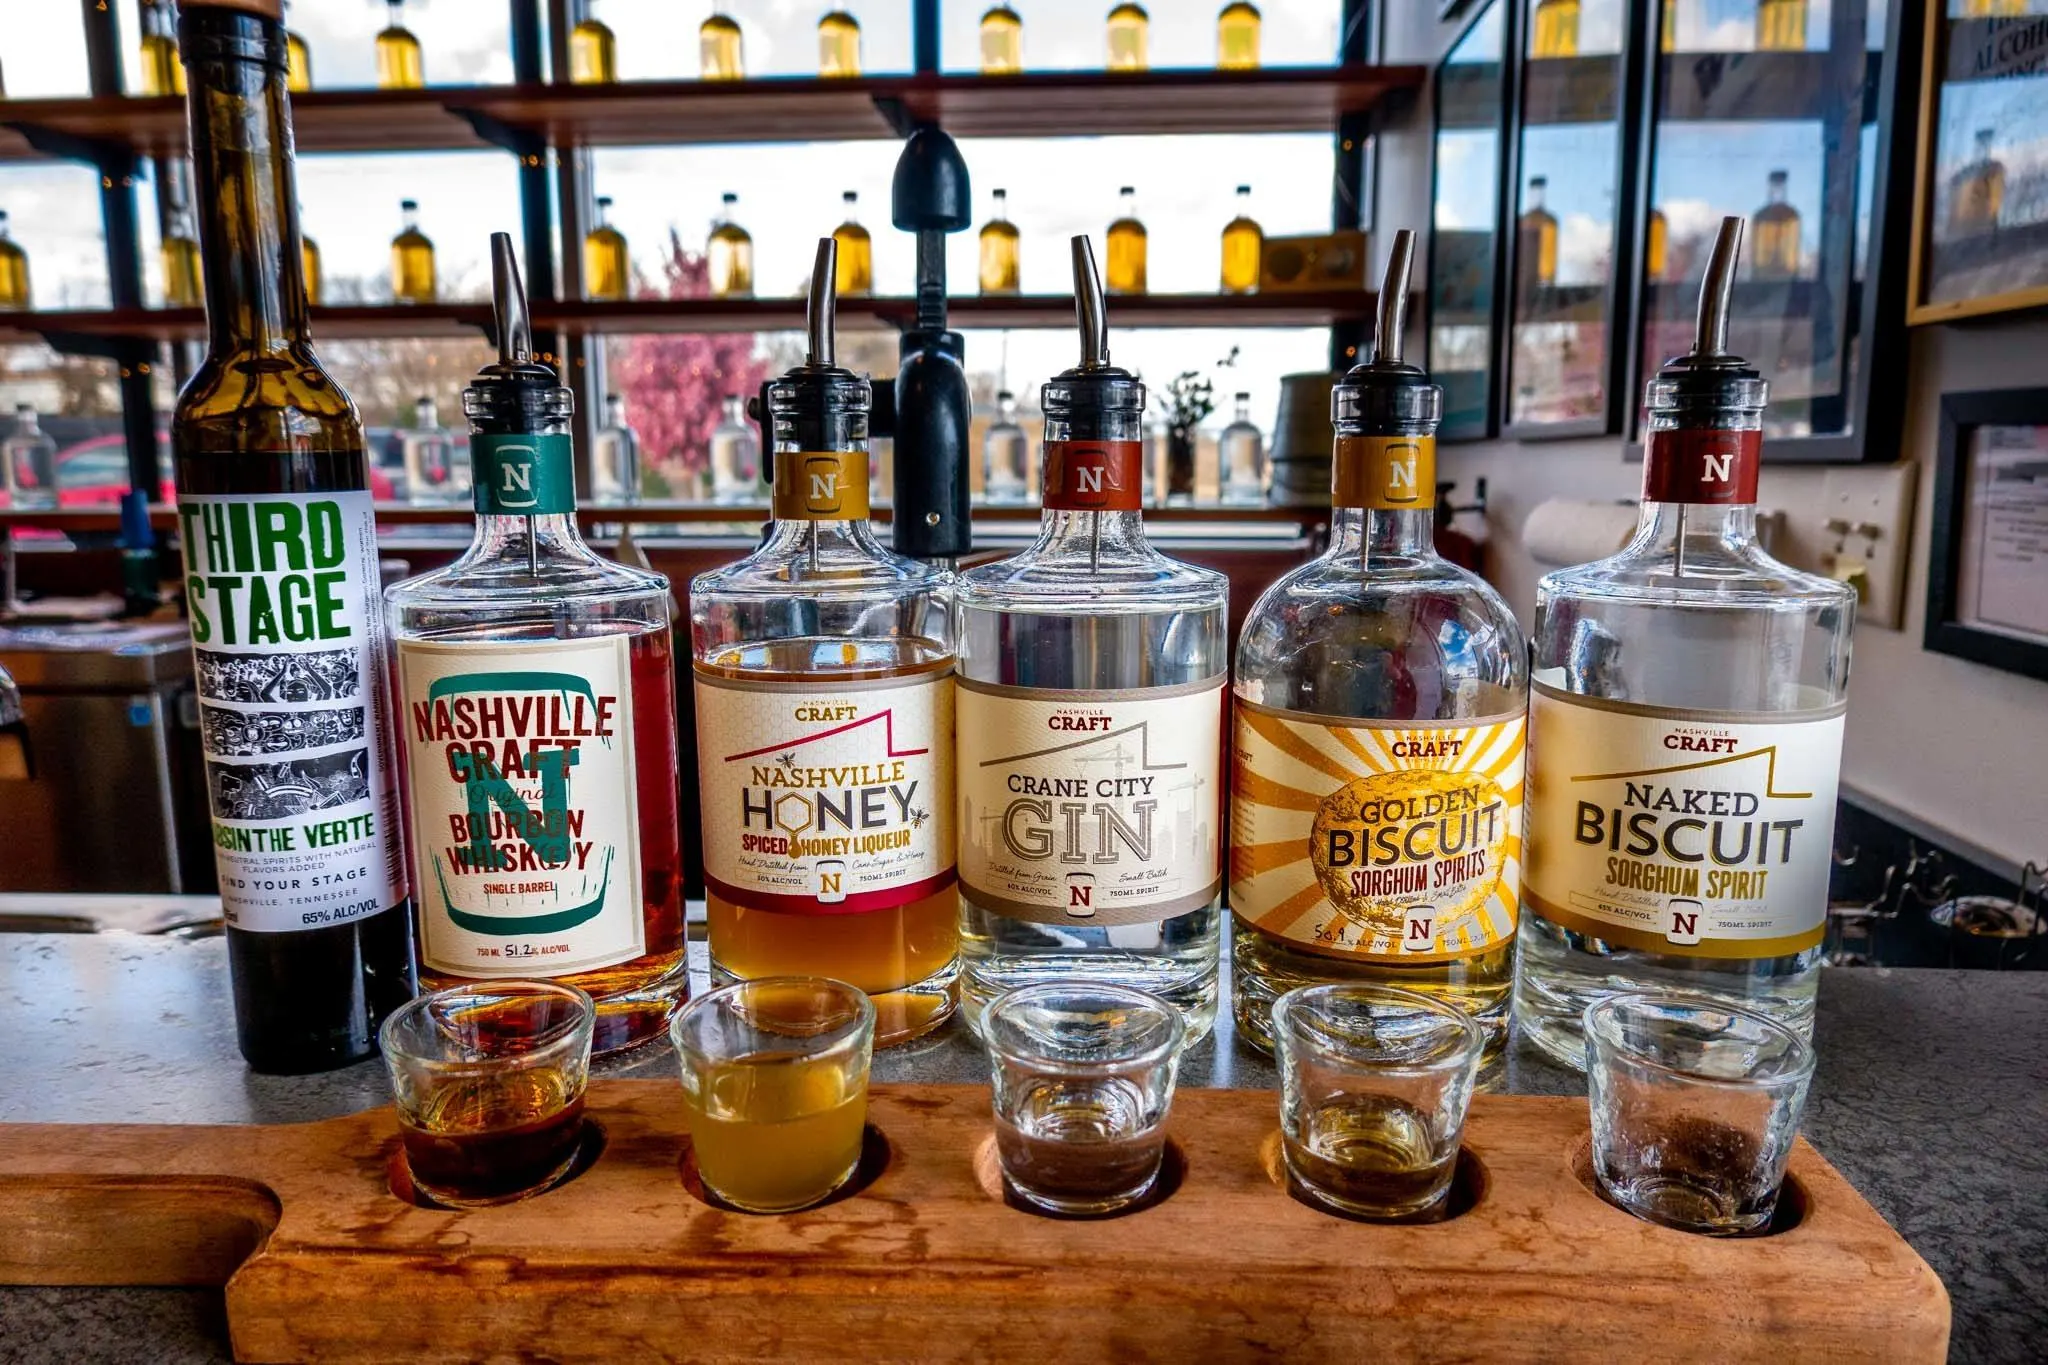 Bottles of spirits and shot glasses on the bar at Nashville Craft Distillery